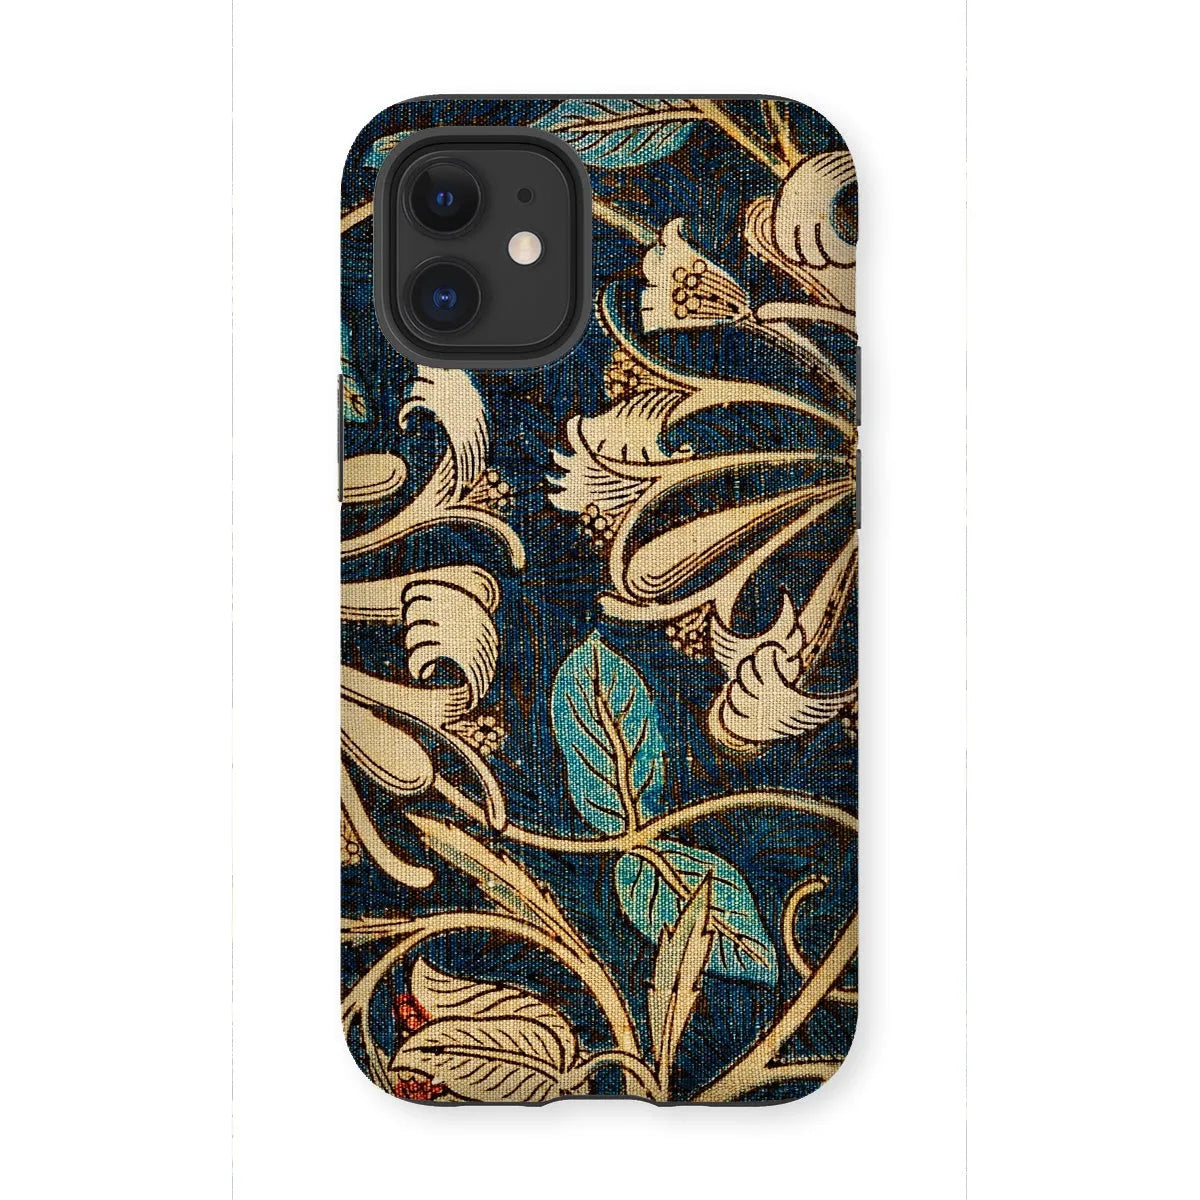 Honeysuckle 3 - Floral Aesthetic Phone Case - William Morris - Iphone 12 Mini / Matte - Mobile Phone Cases - Aesthetic